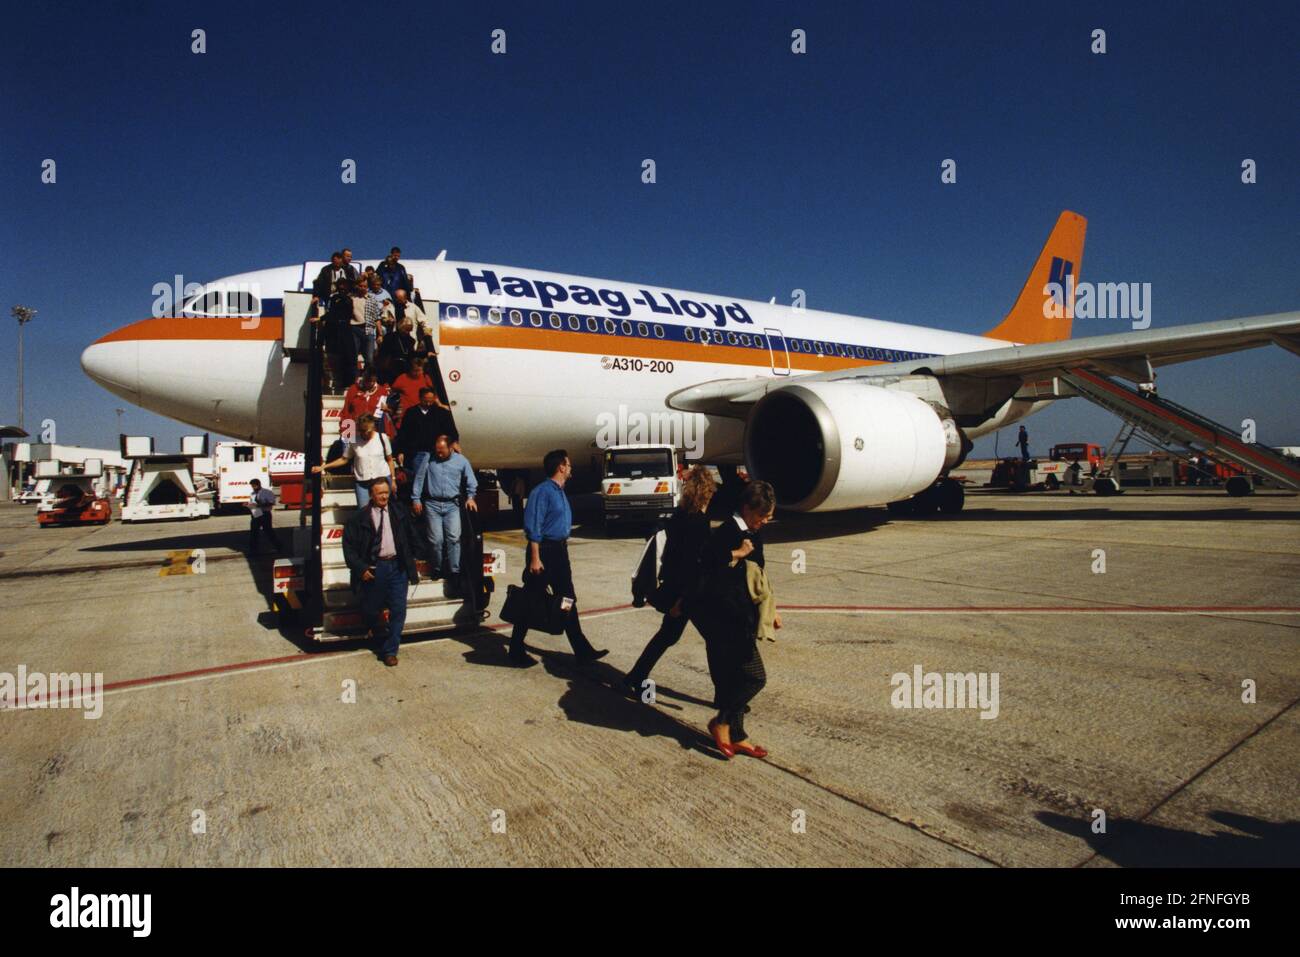 Ein Airbus A310-200 der deutschen Fluggesellschaft Hapag-Lloyd nach der  Landung auf dem Flughafen Puerto del Rosario auf Fuerteventura.  [Automatisierte Übersetzung] Stockfotografie - Alamy